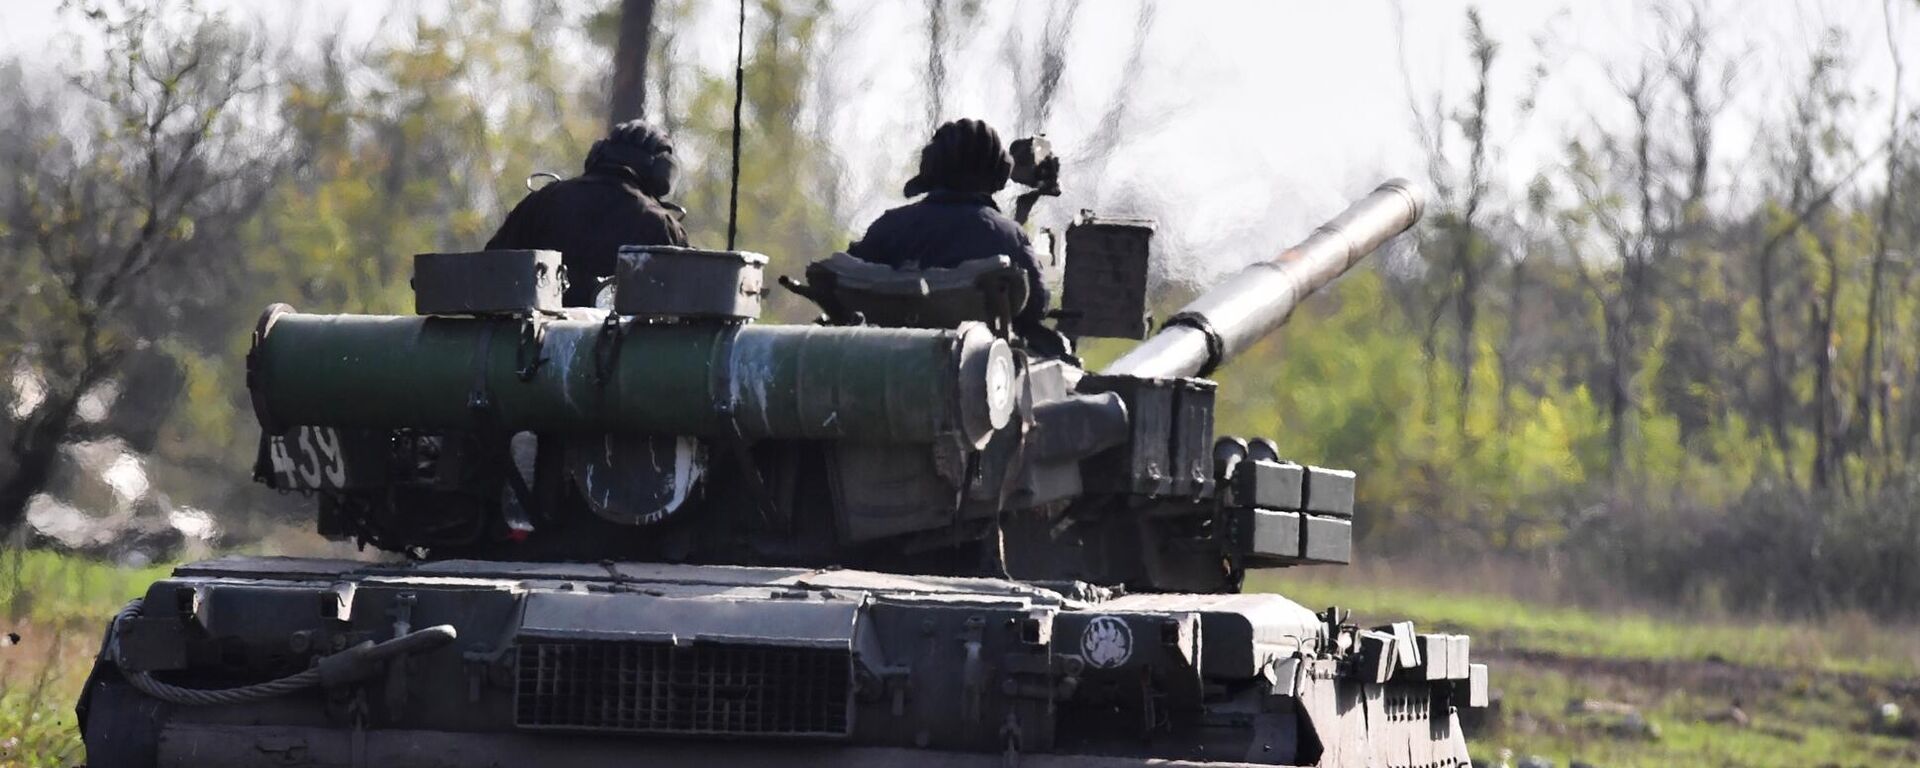 يتم إرسال دبابة تي-80 لإطلاق النار الحي في مواقع القوات المسلحة لأوكرانيا في منطقة دونيتسك - سبوتنيك عربي, 1920, 15.10.2022